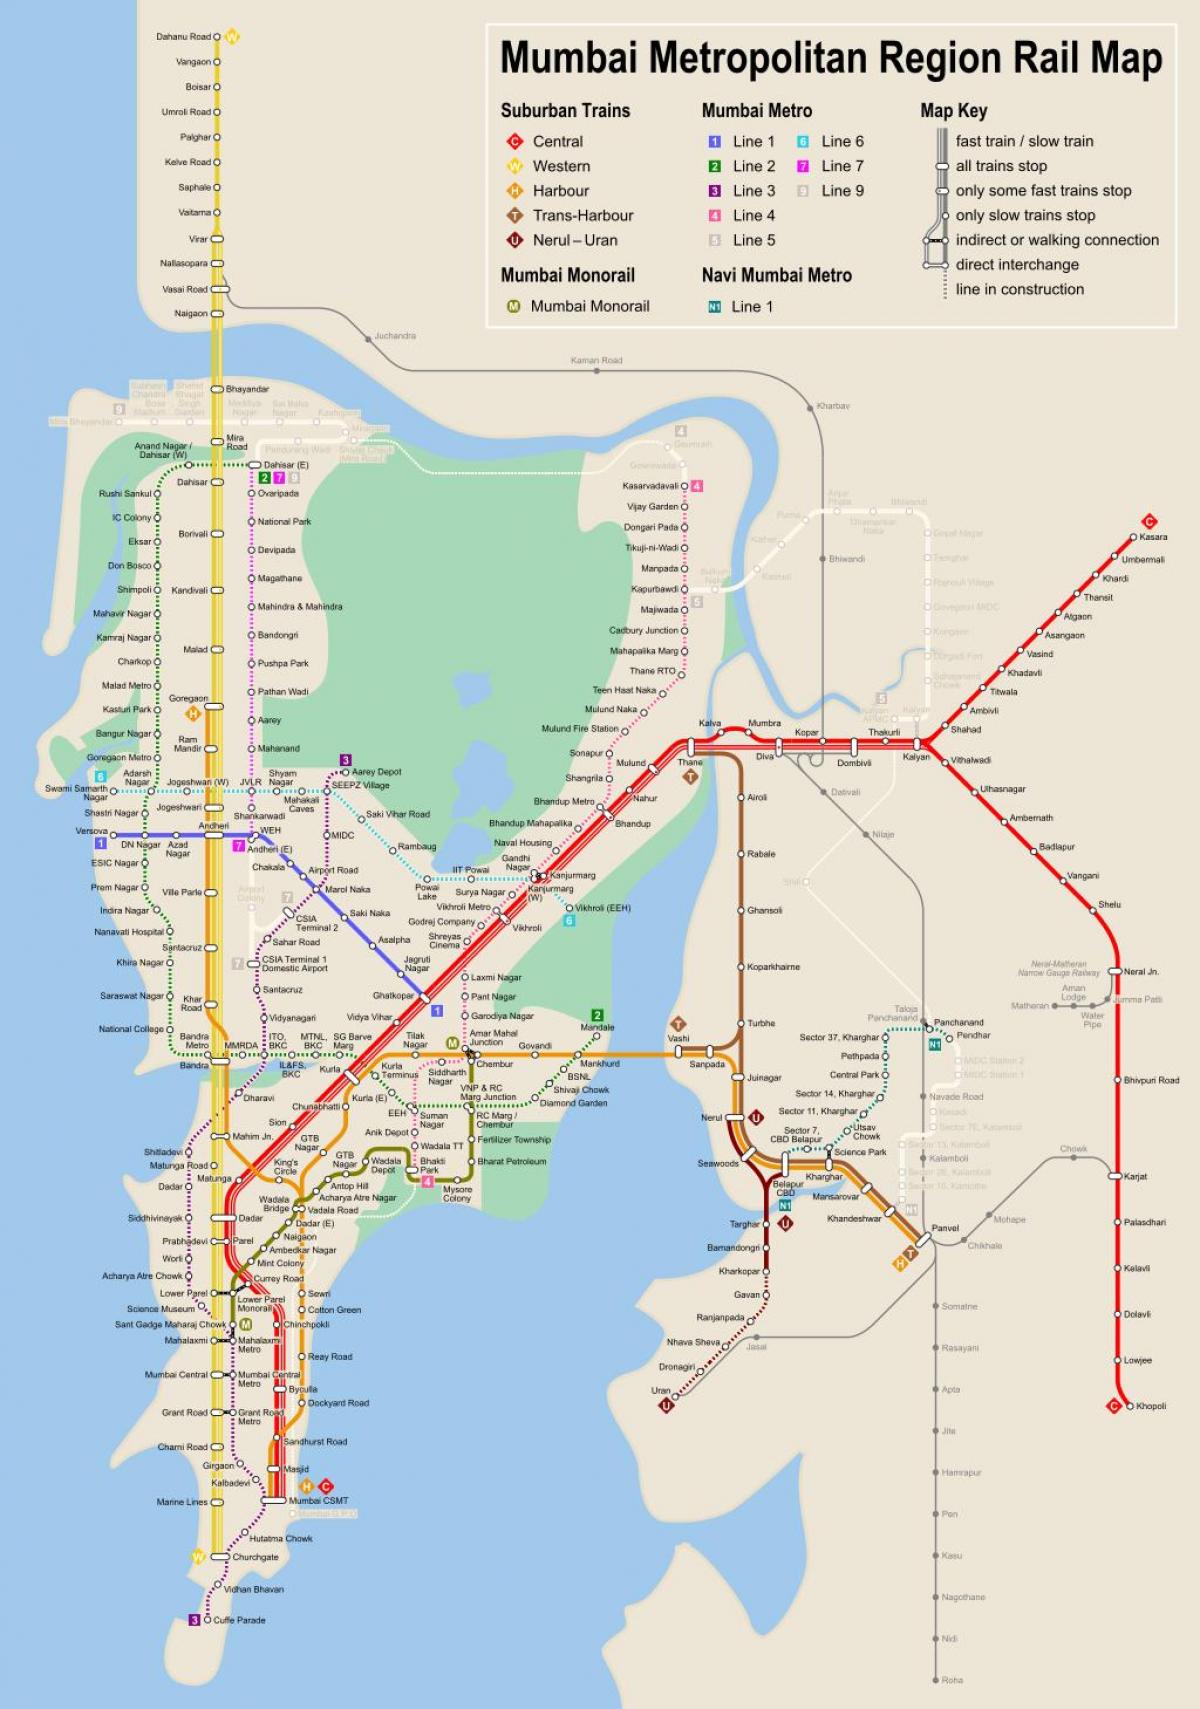 ムンバイ - ボンベイの地下鉄駅の地図